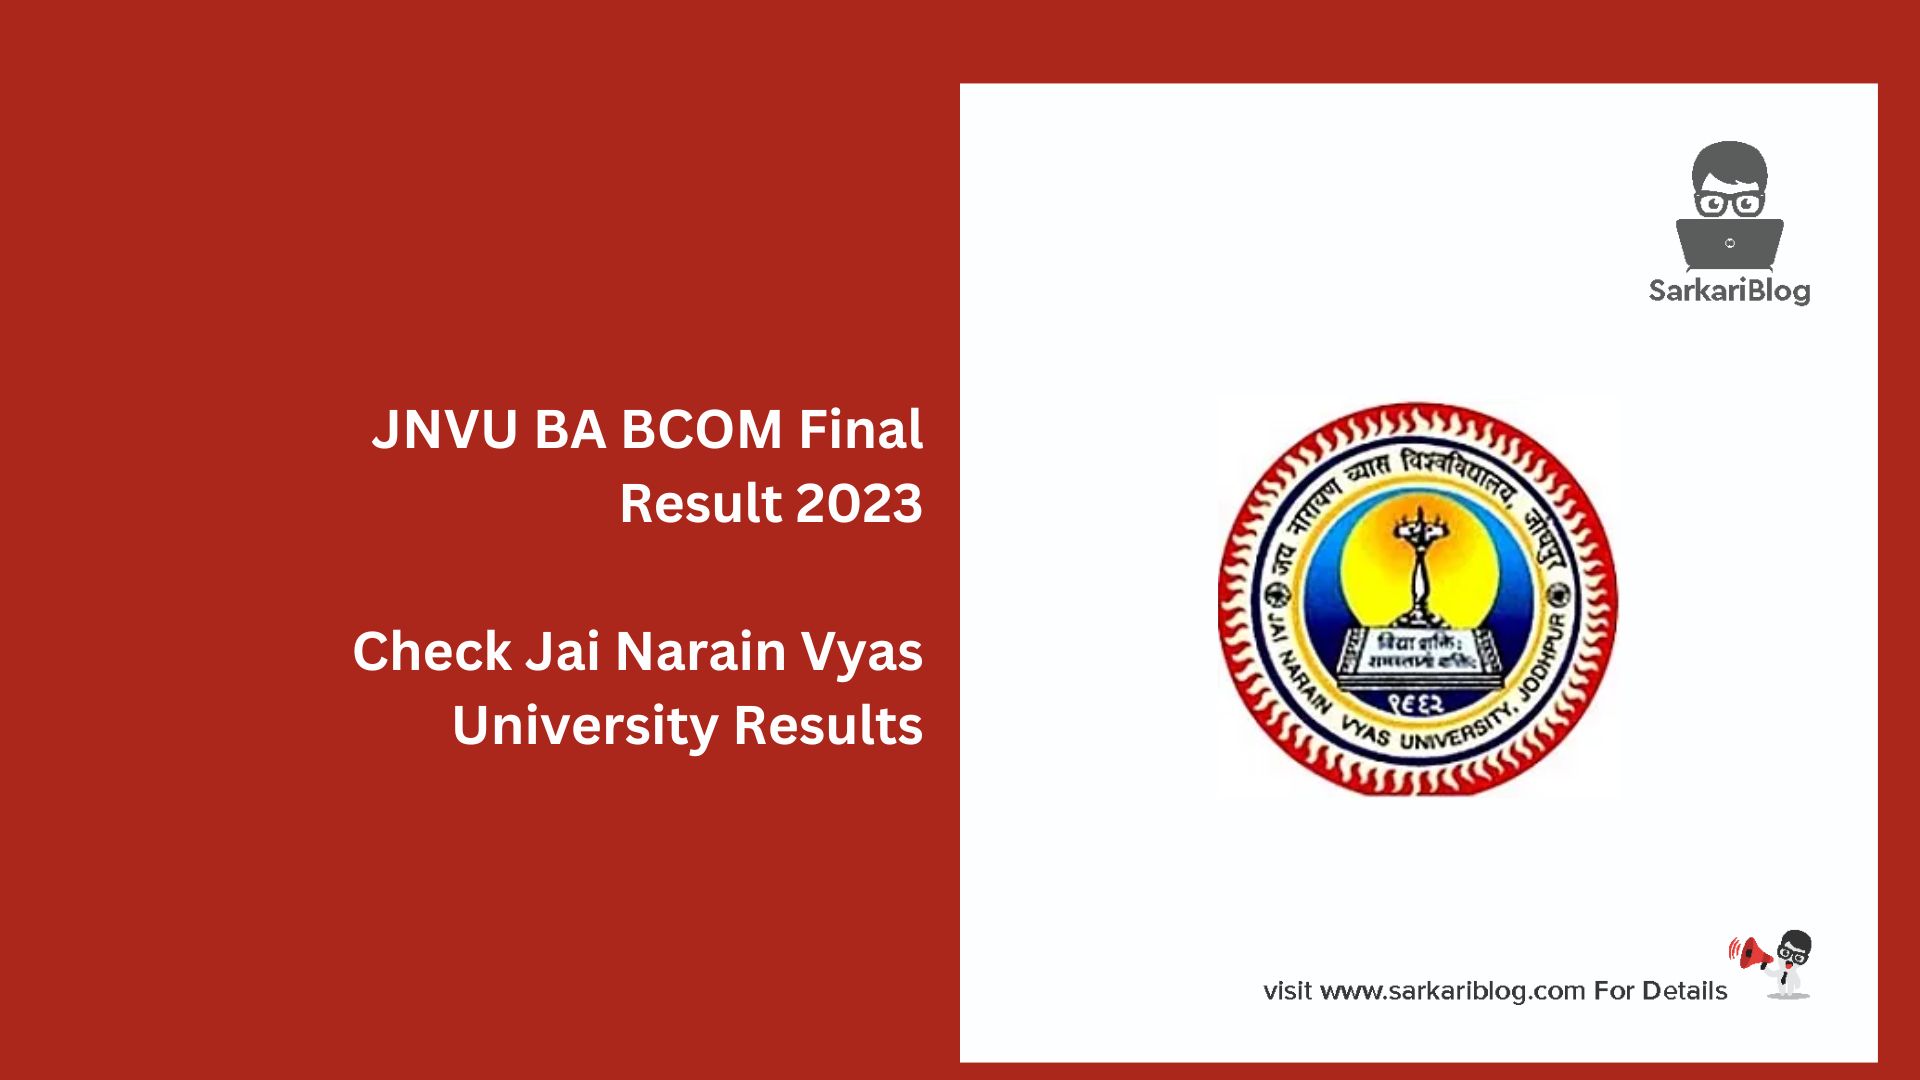 JNVU BA BCOM Final Result 2023